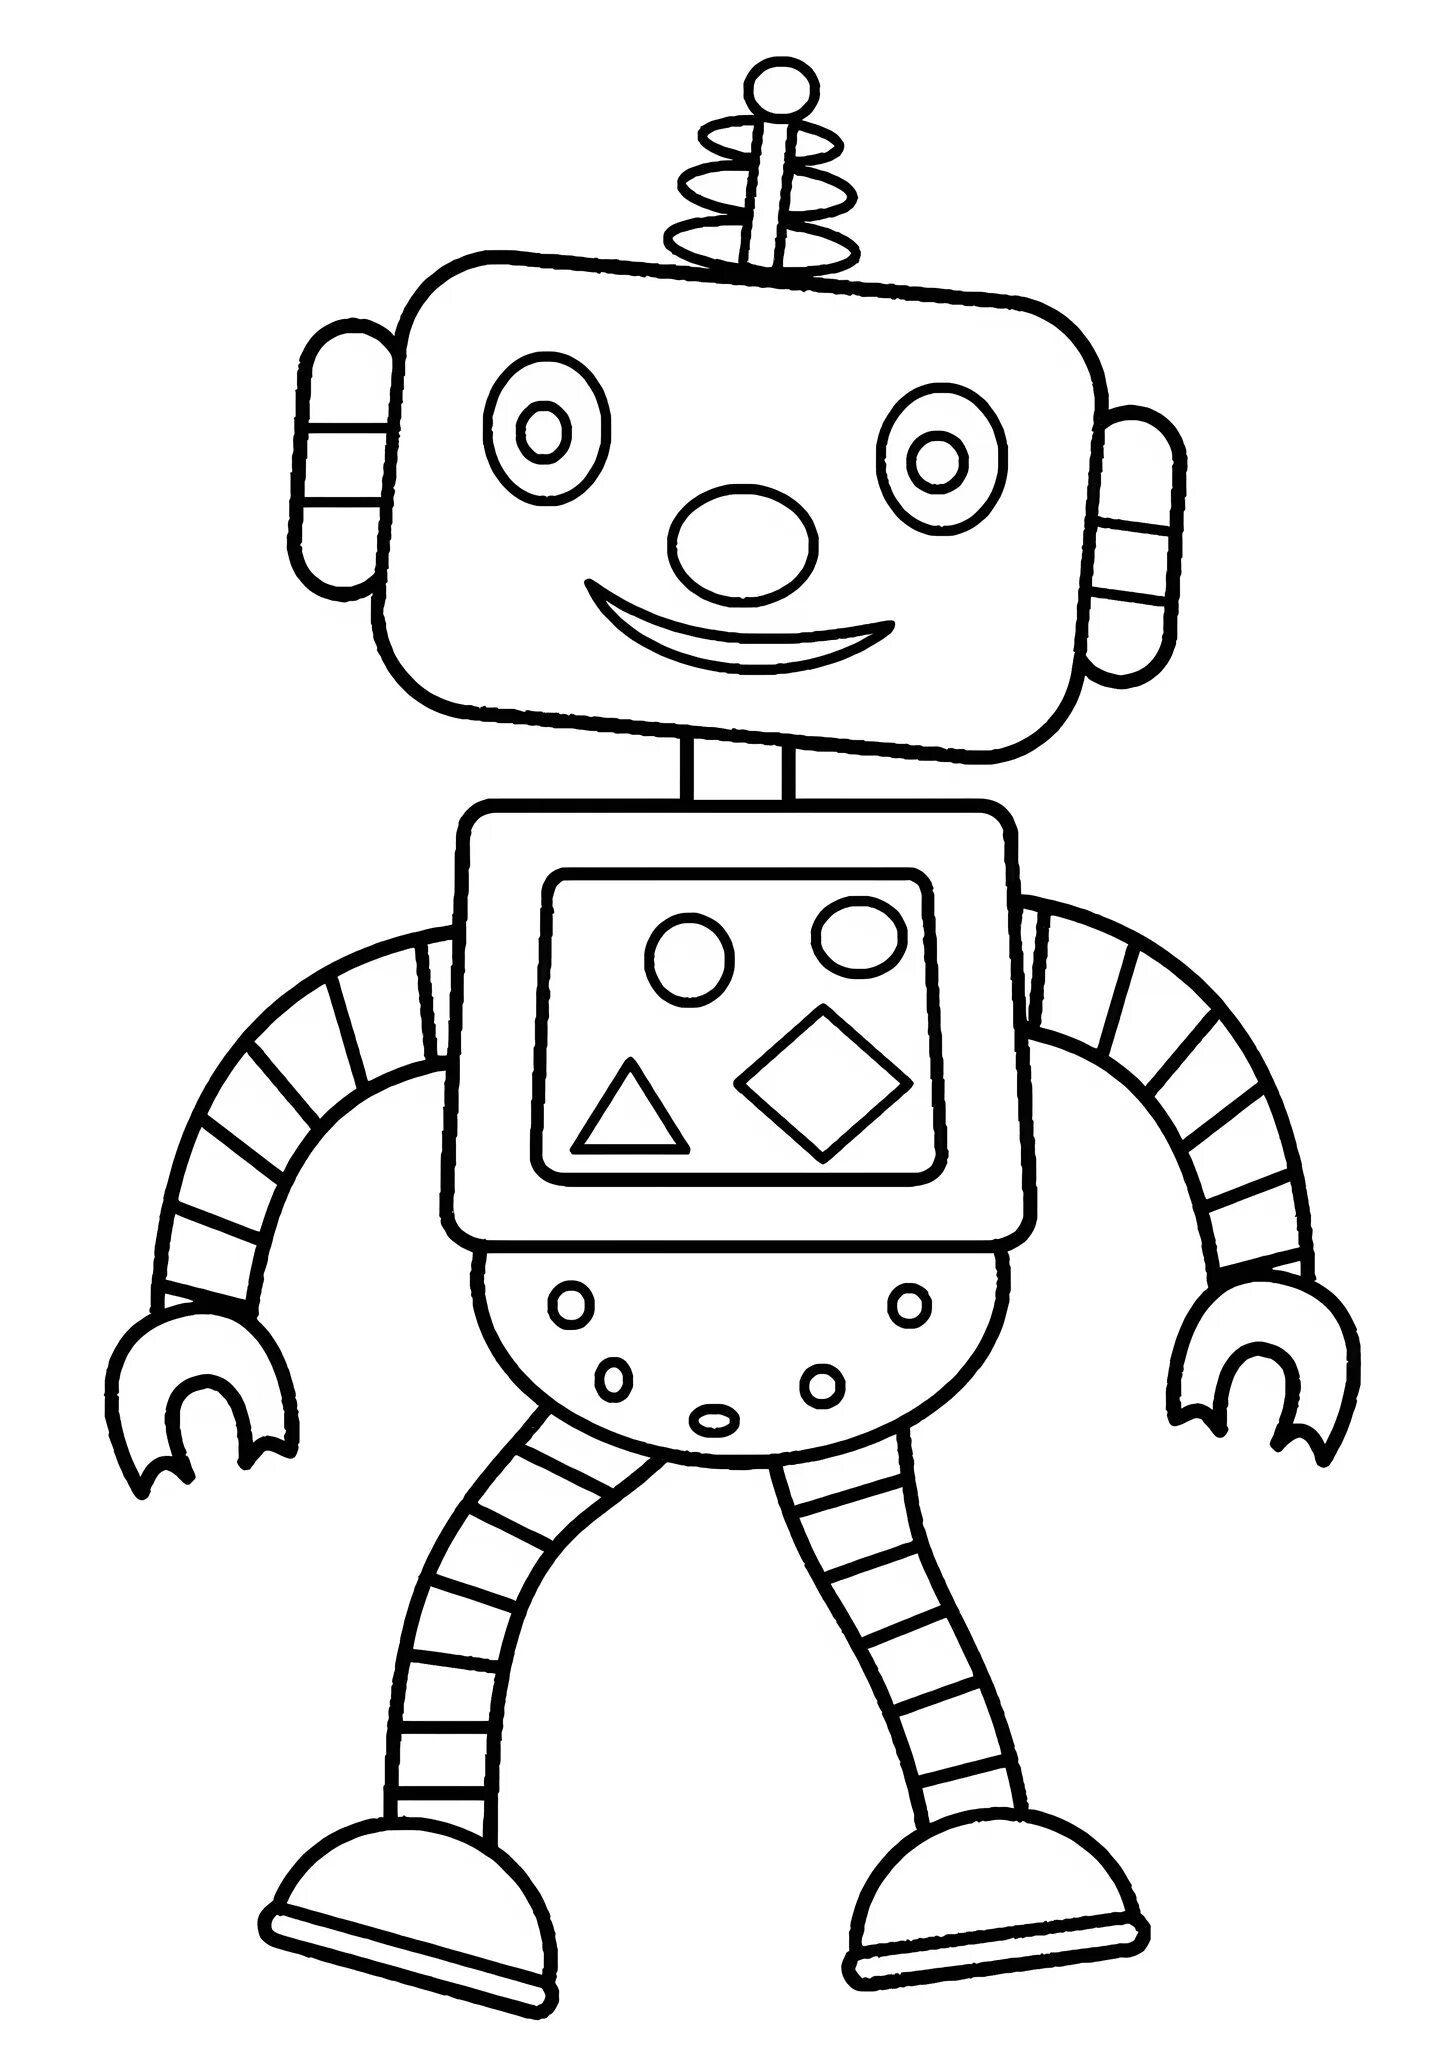 Раскраска робота 3. Робот робик раскраска. Робот раскраска для детей. Тоботы. Раскраска. Hj,jnраскраска для детей.